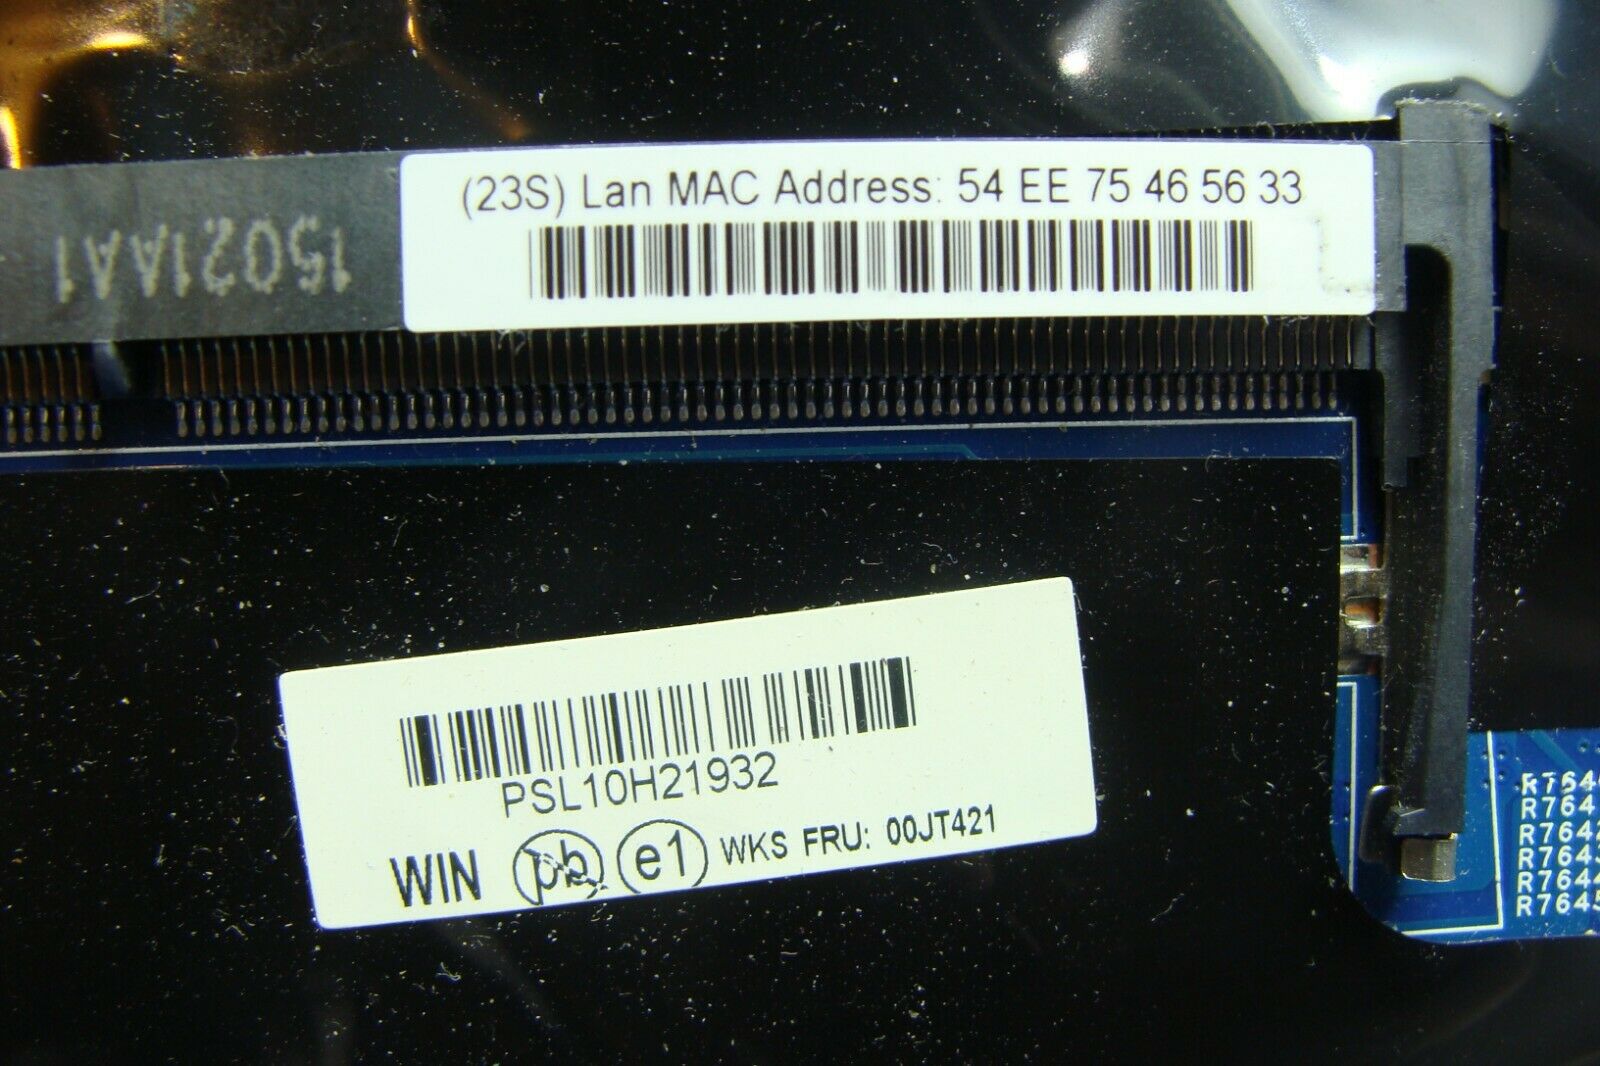 Lenovo ThinkPad W550s 15.6